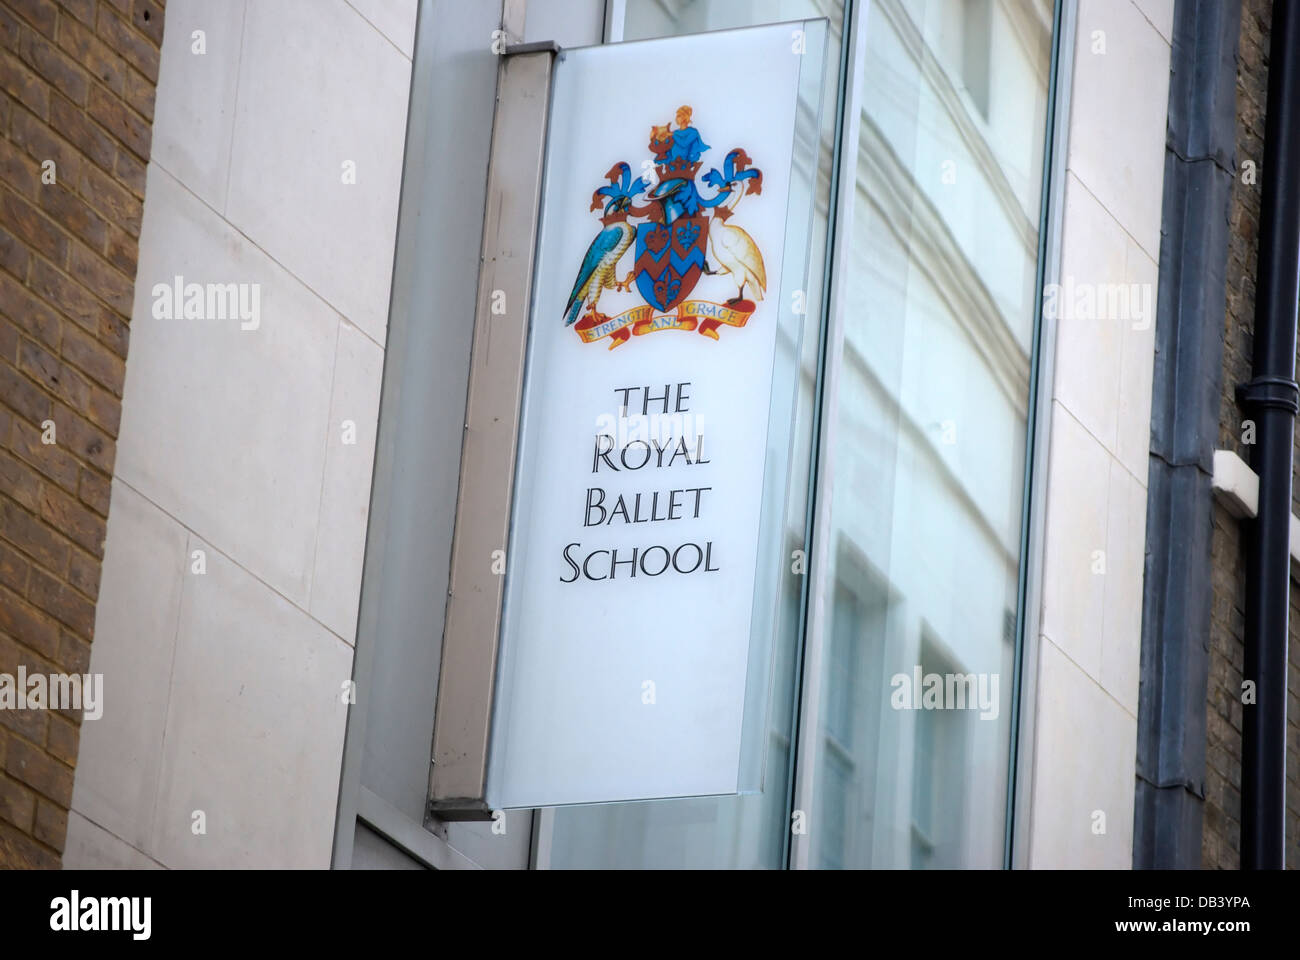 Signe pour le Royal Ballet School, Covent Garden, Londres, Angleterre Banque D'Images